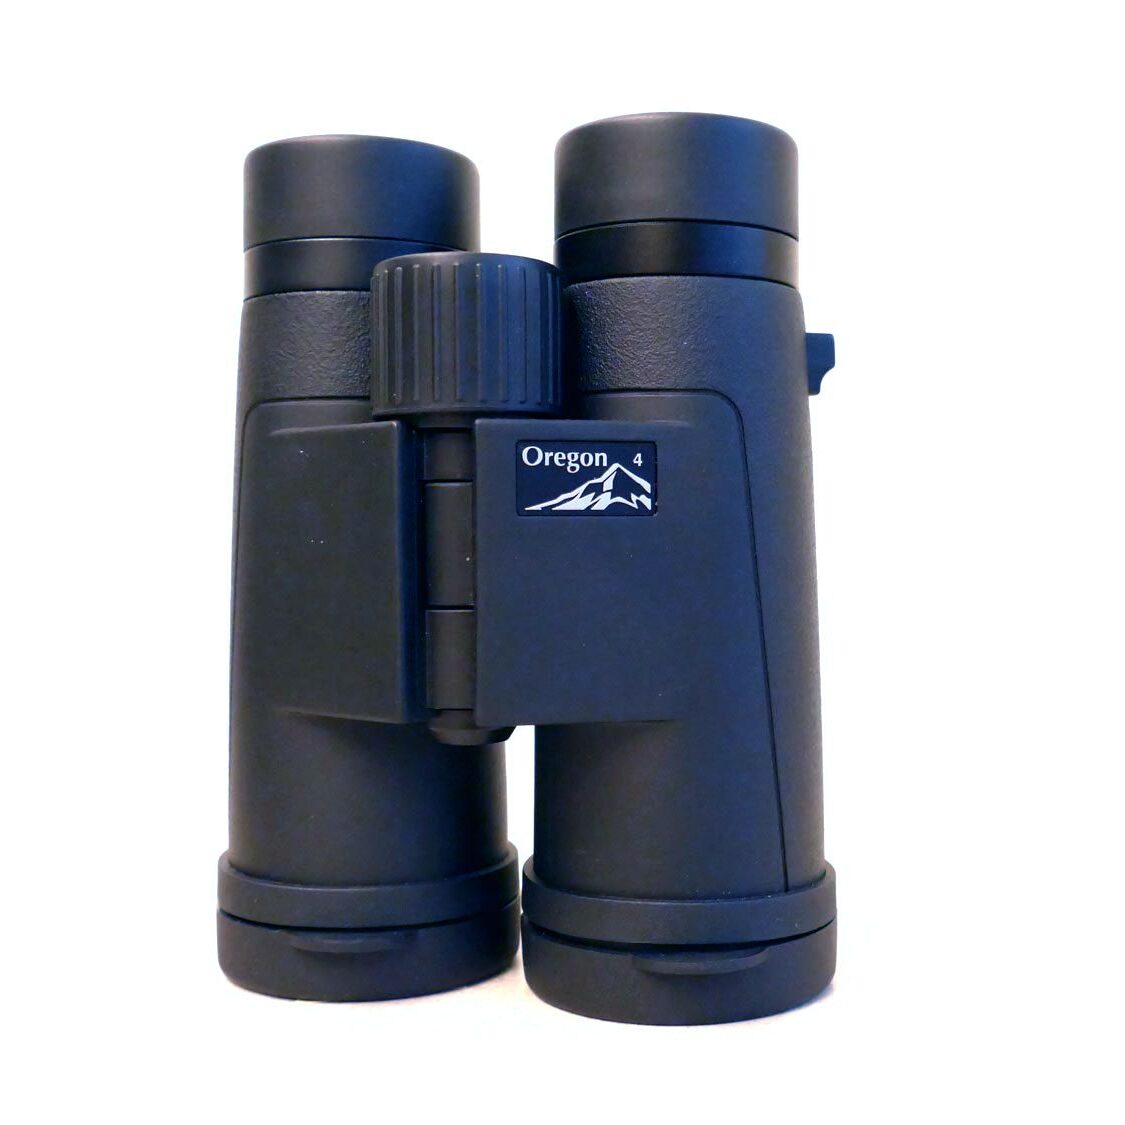 Opticron Oregon 4 PC Oasis binoculars.